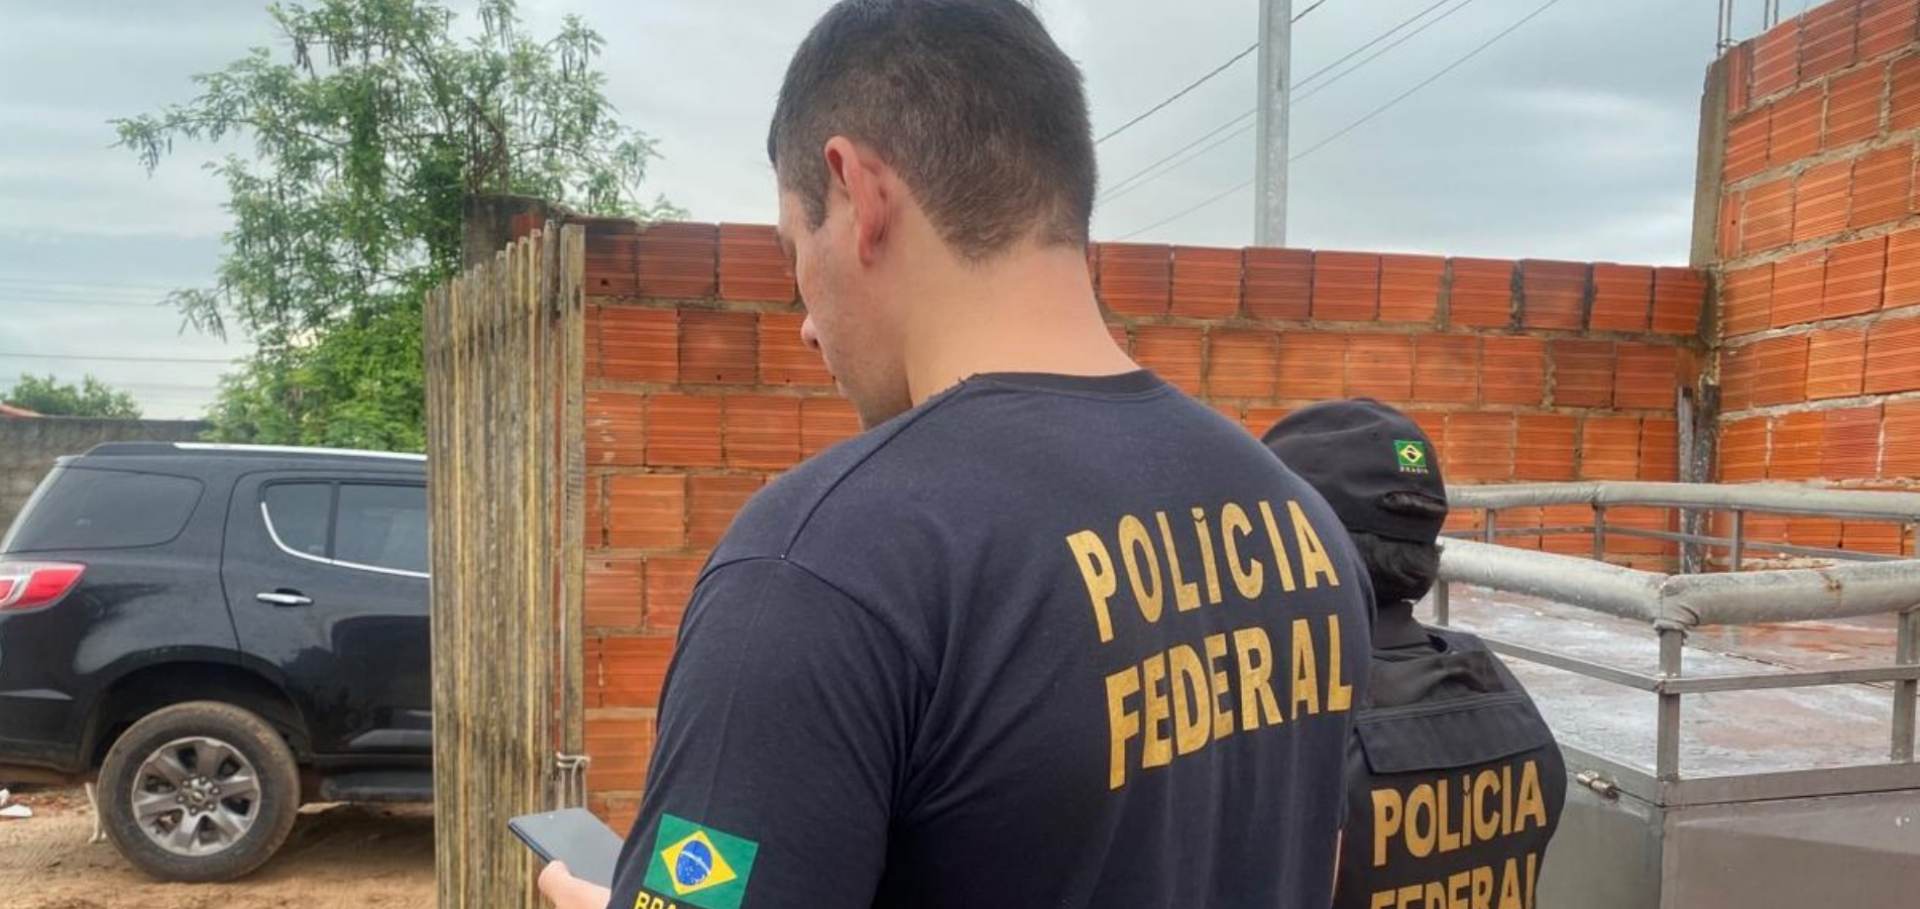 Polícia Federal investiga armazenamento e compartilhamento de pornografia infantojuvenil no Piauí